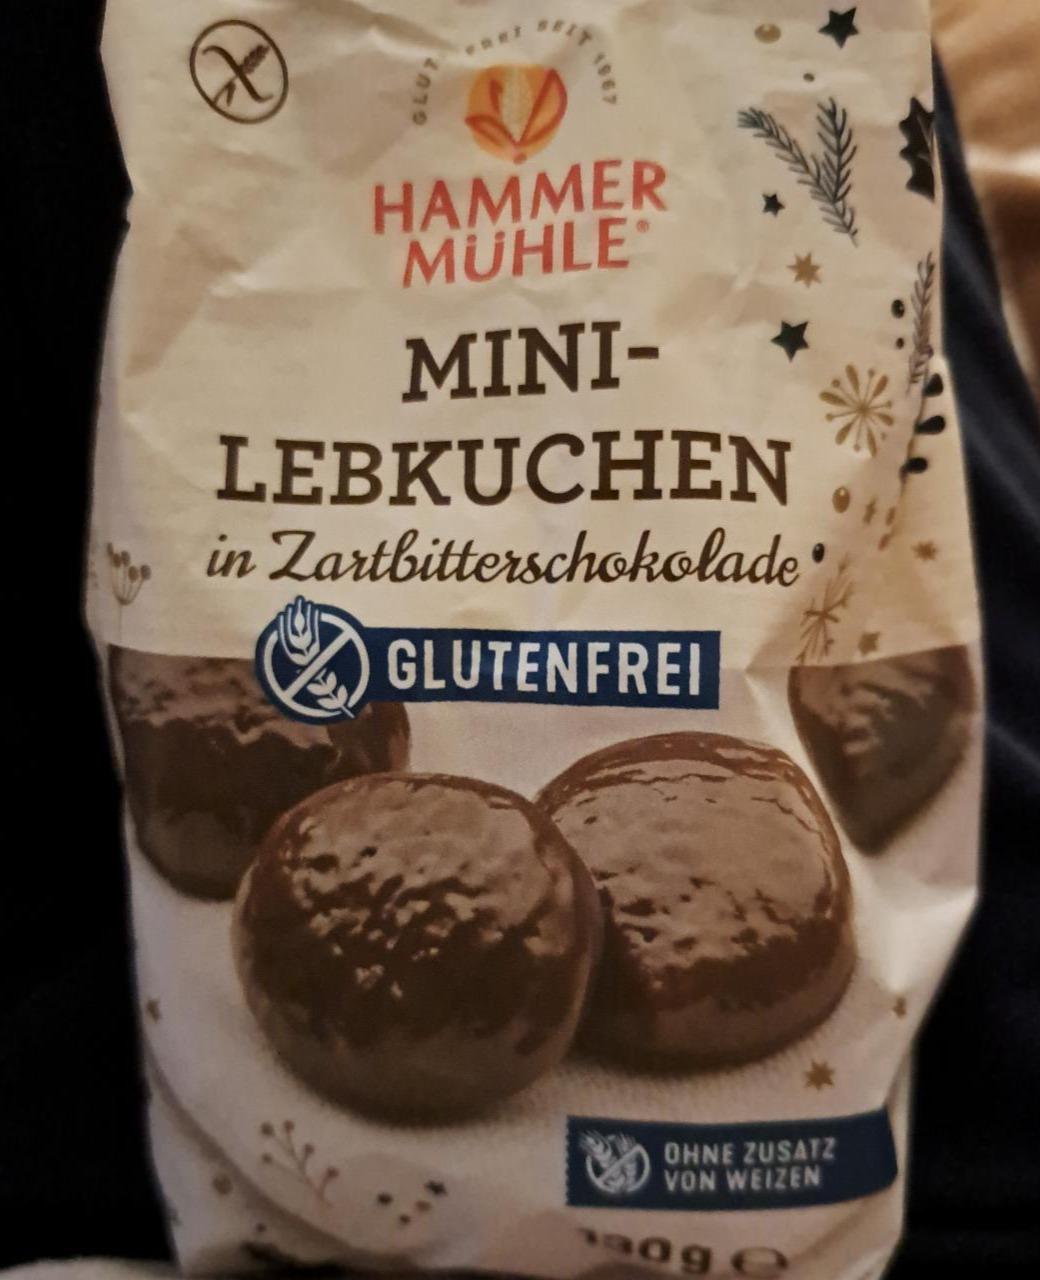 Fotografie - Mini-Lebkuchen in Zartbitterschokolade glutenfrei Hammer Mühle